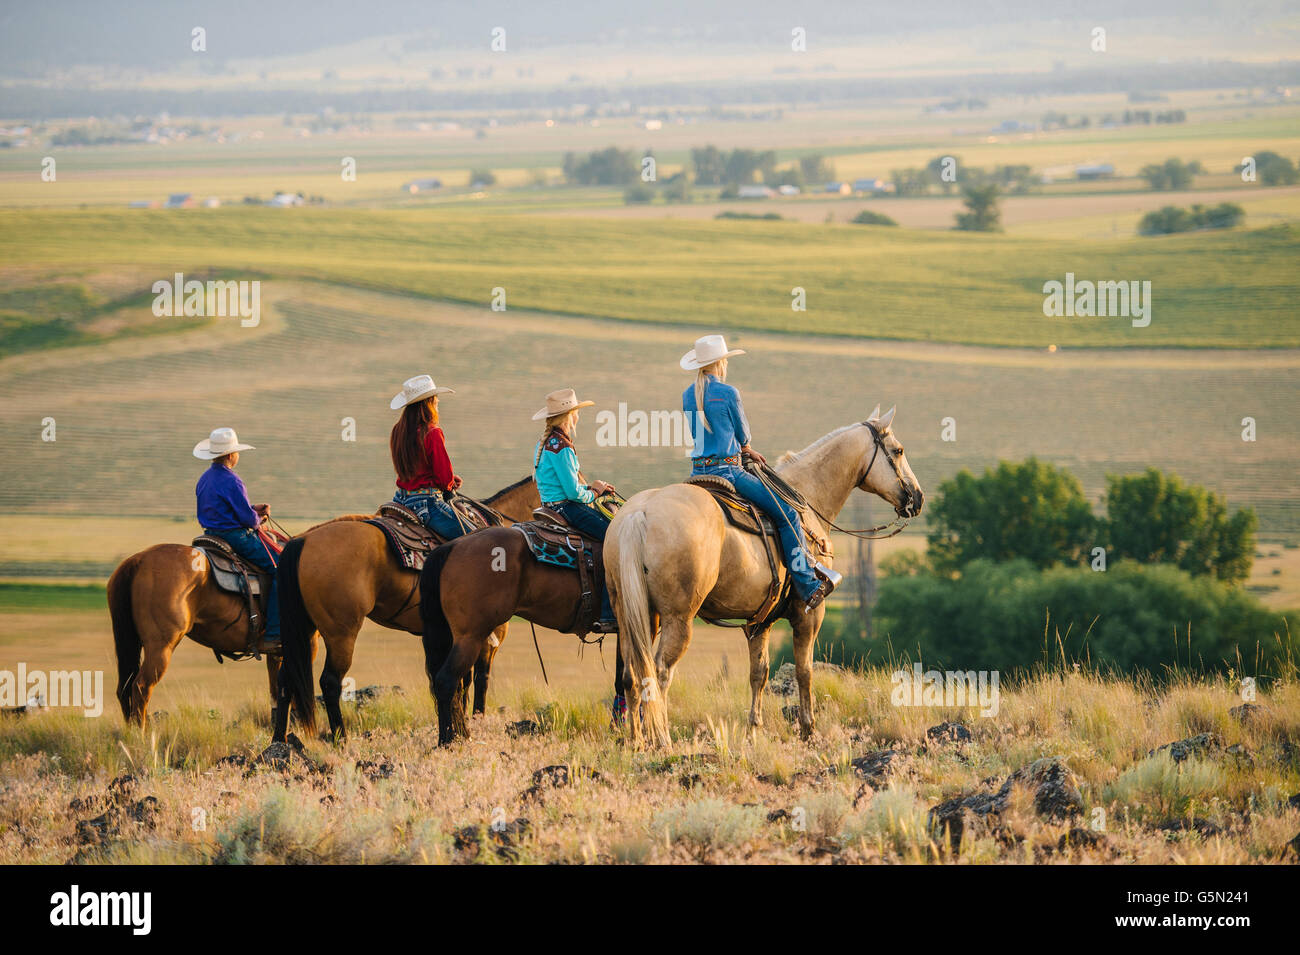 Cowboys et cowgirls sur l'admirant le paysage rural Banque D'Images